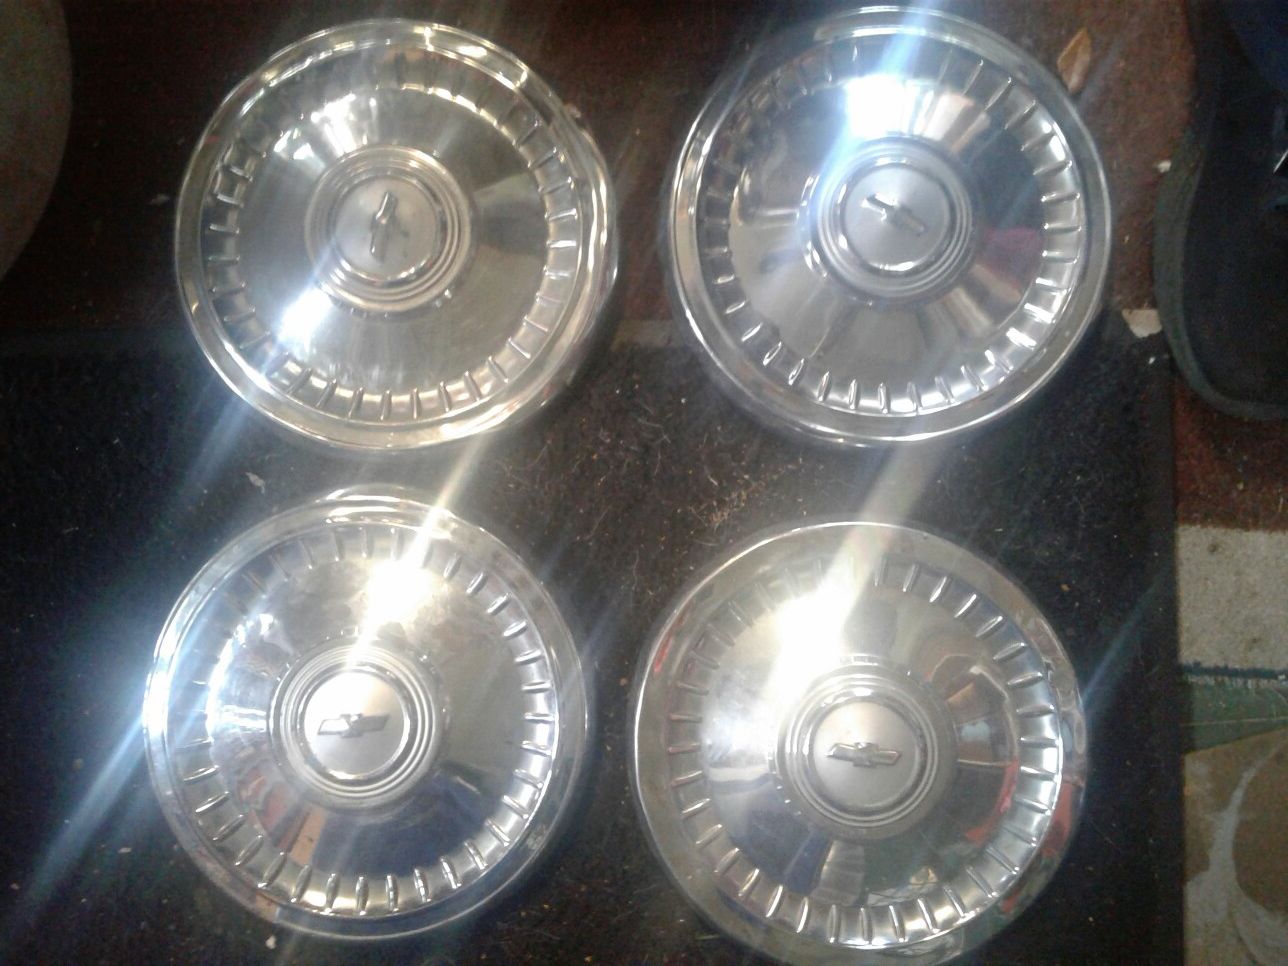 Chevy nova hub caps